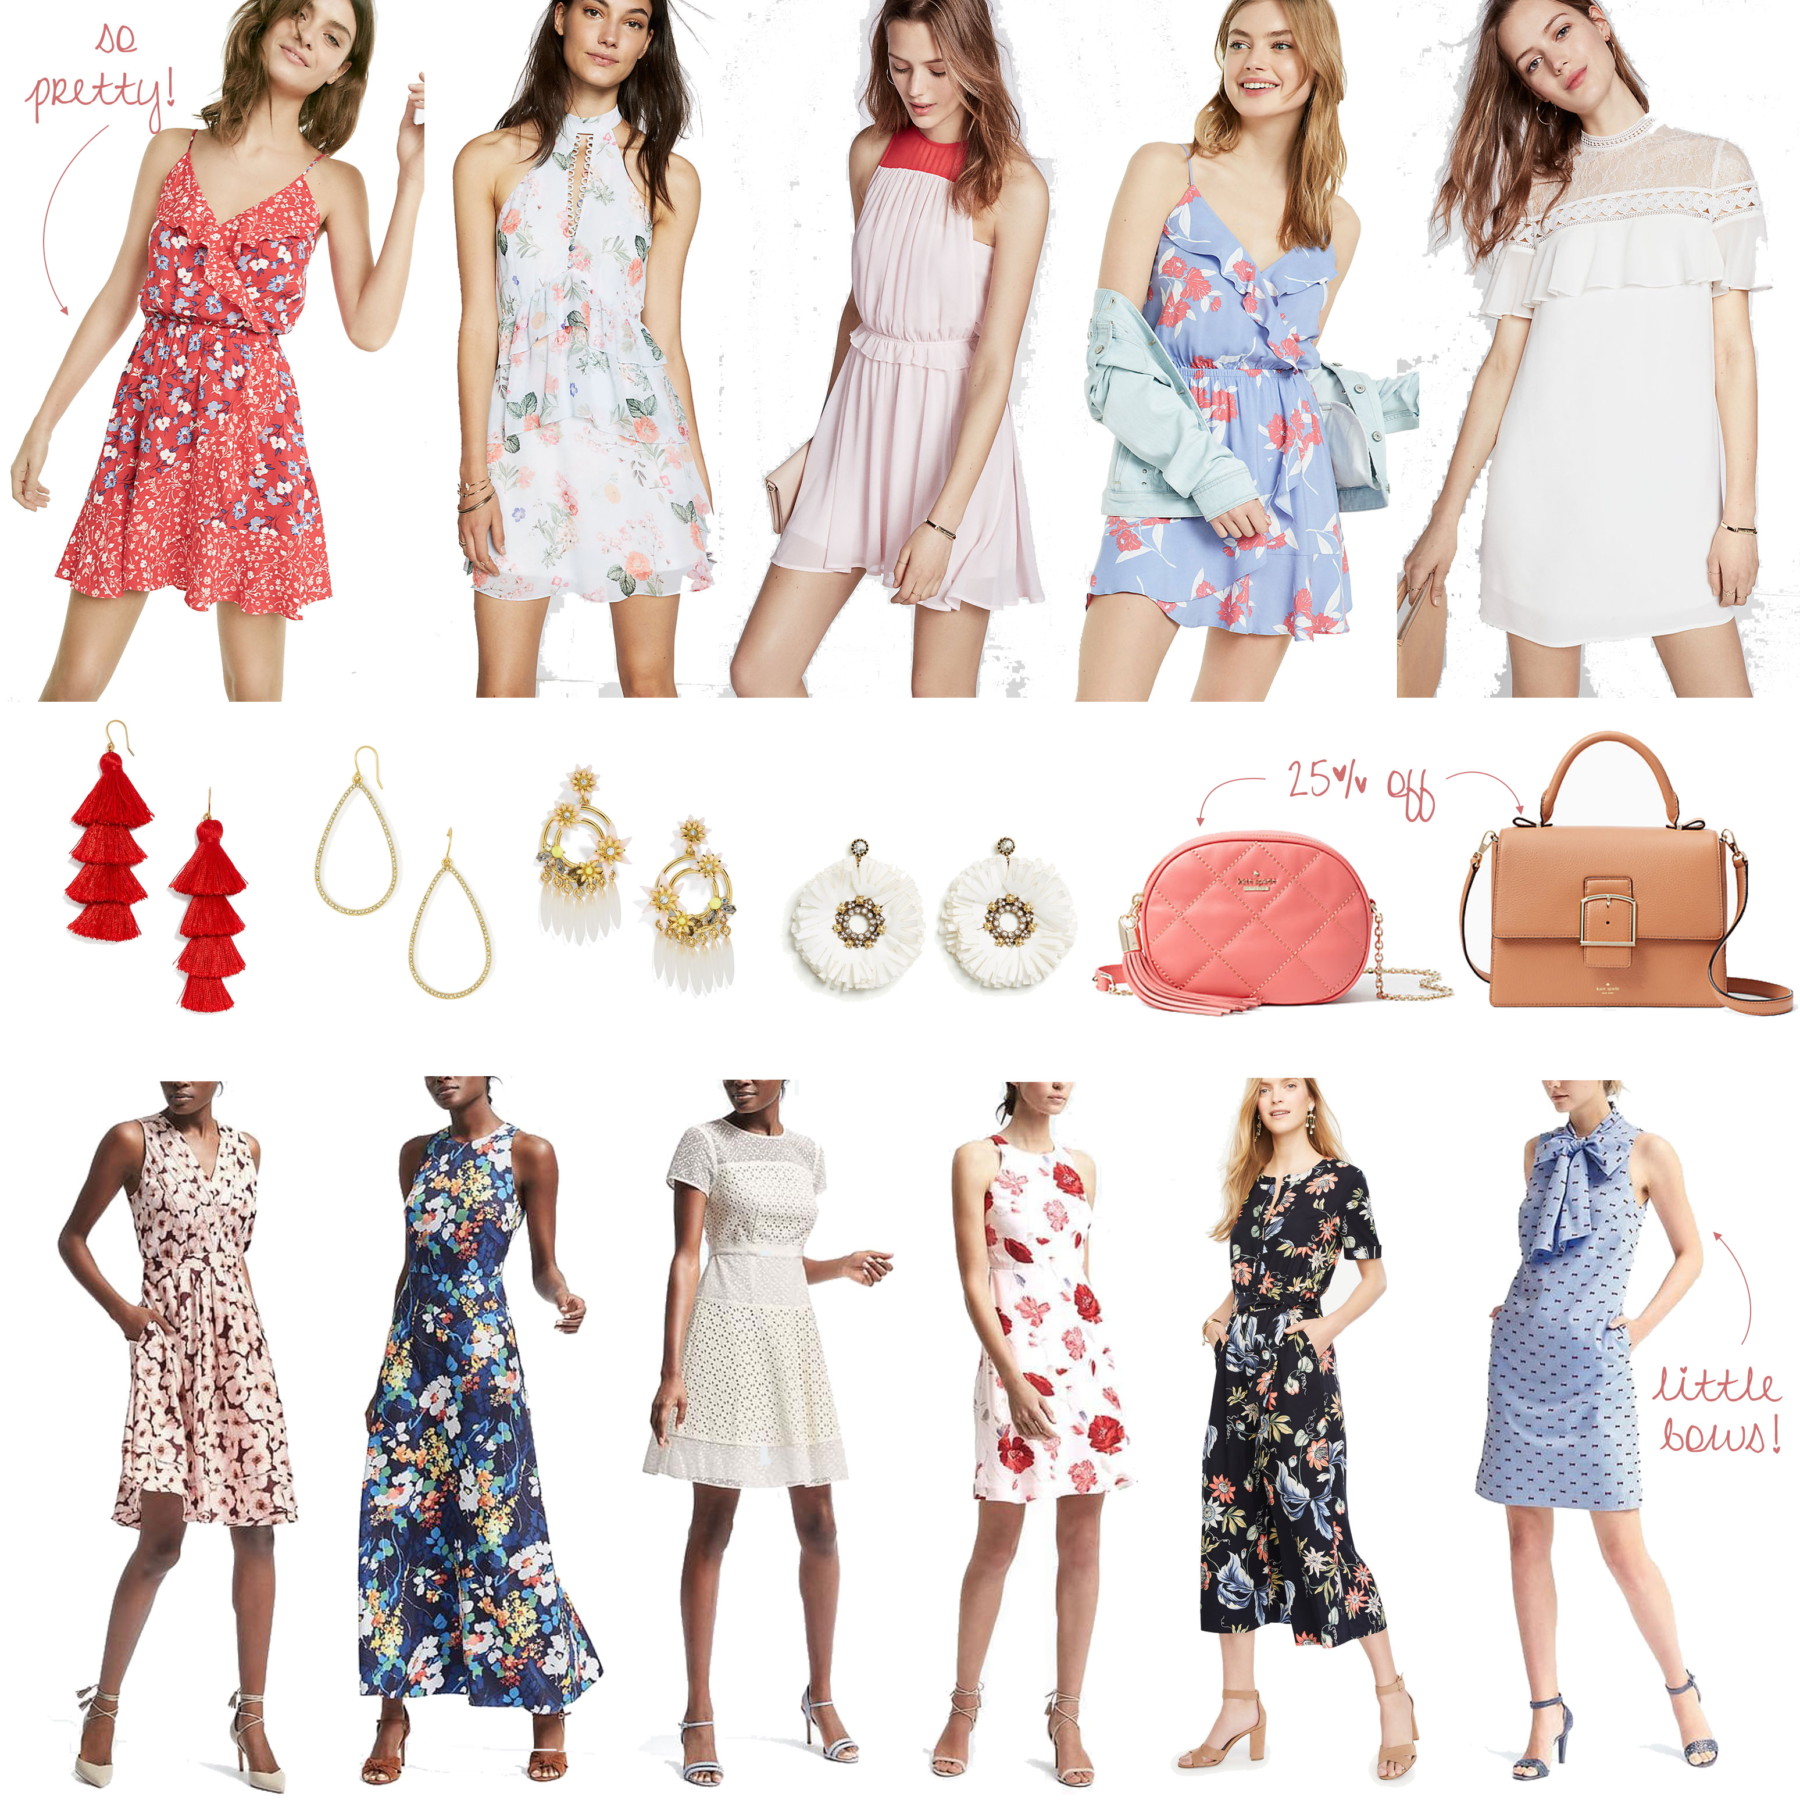 Weekend Sales by petite fashion blogger Kileen of cute & little